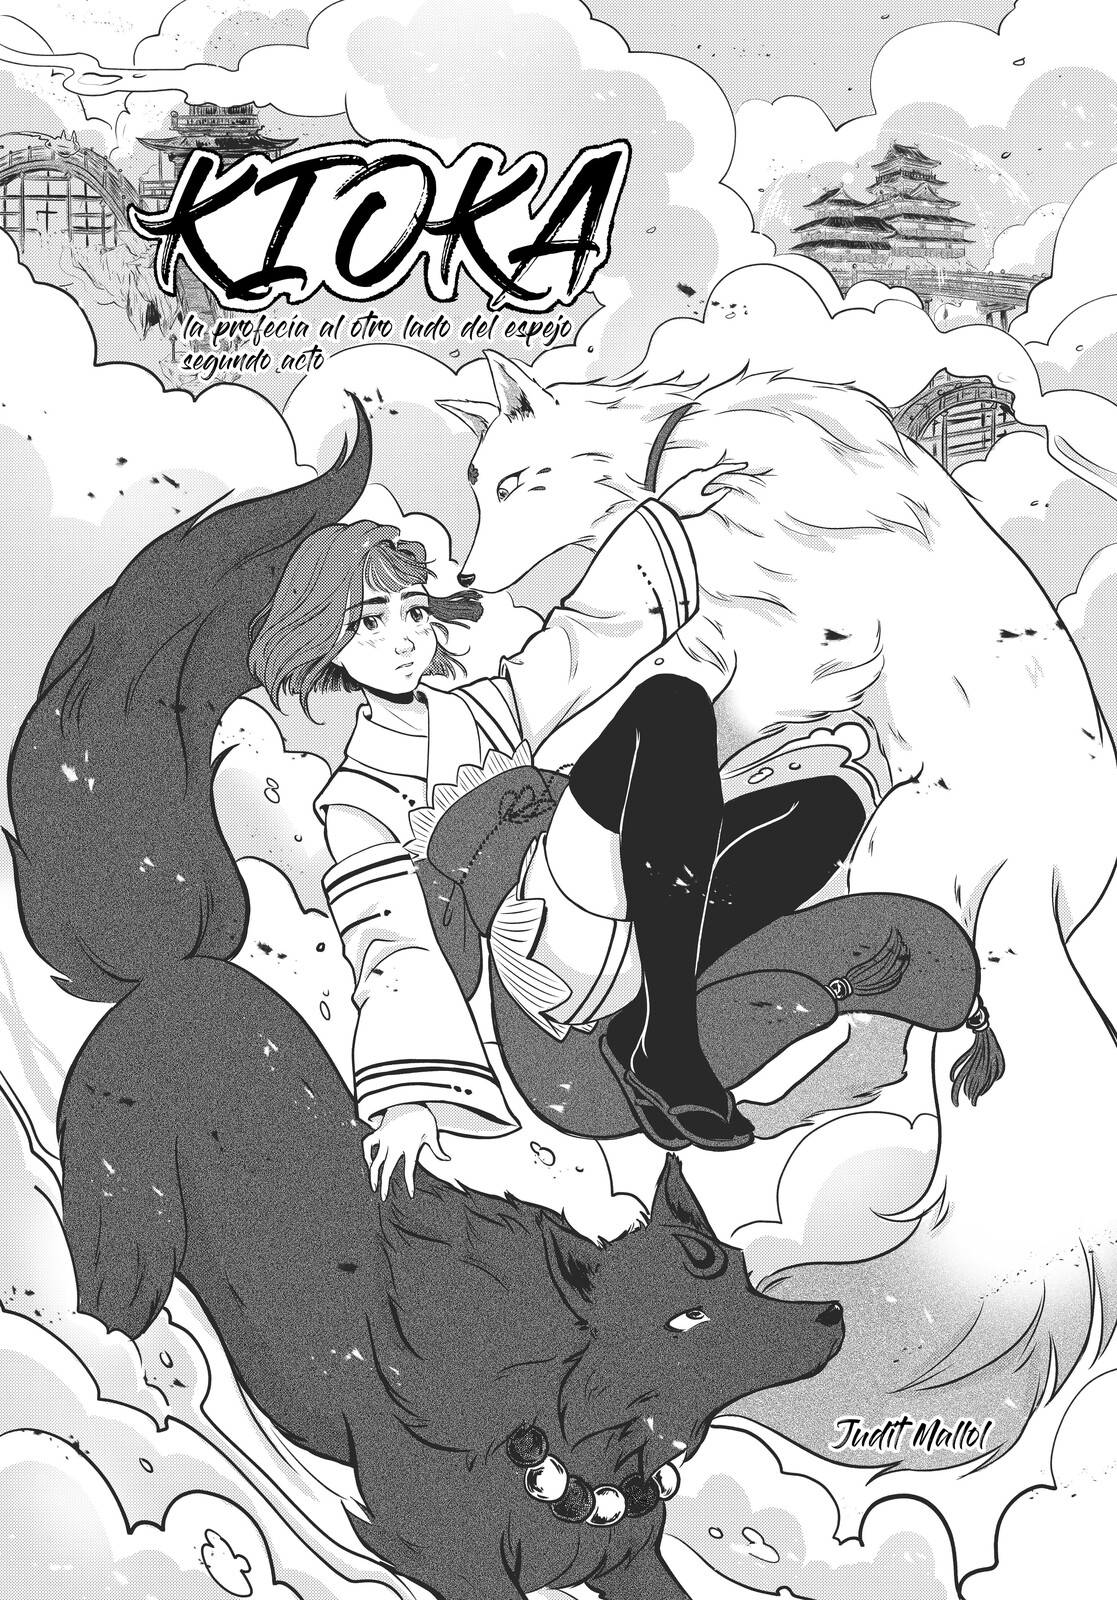 Cover for manga story "Kioka. La profecía al otro lado del espejo" part 2.
(PLANETA MANGA 8 - 2021).